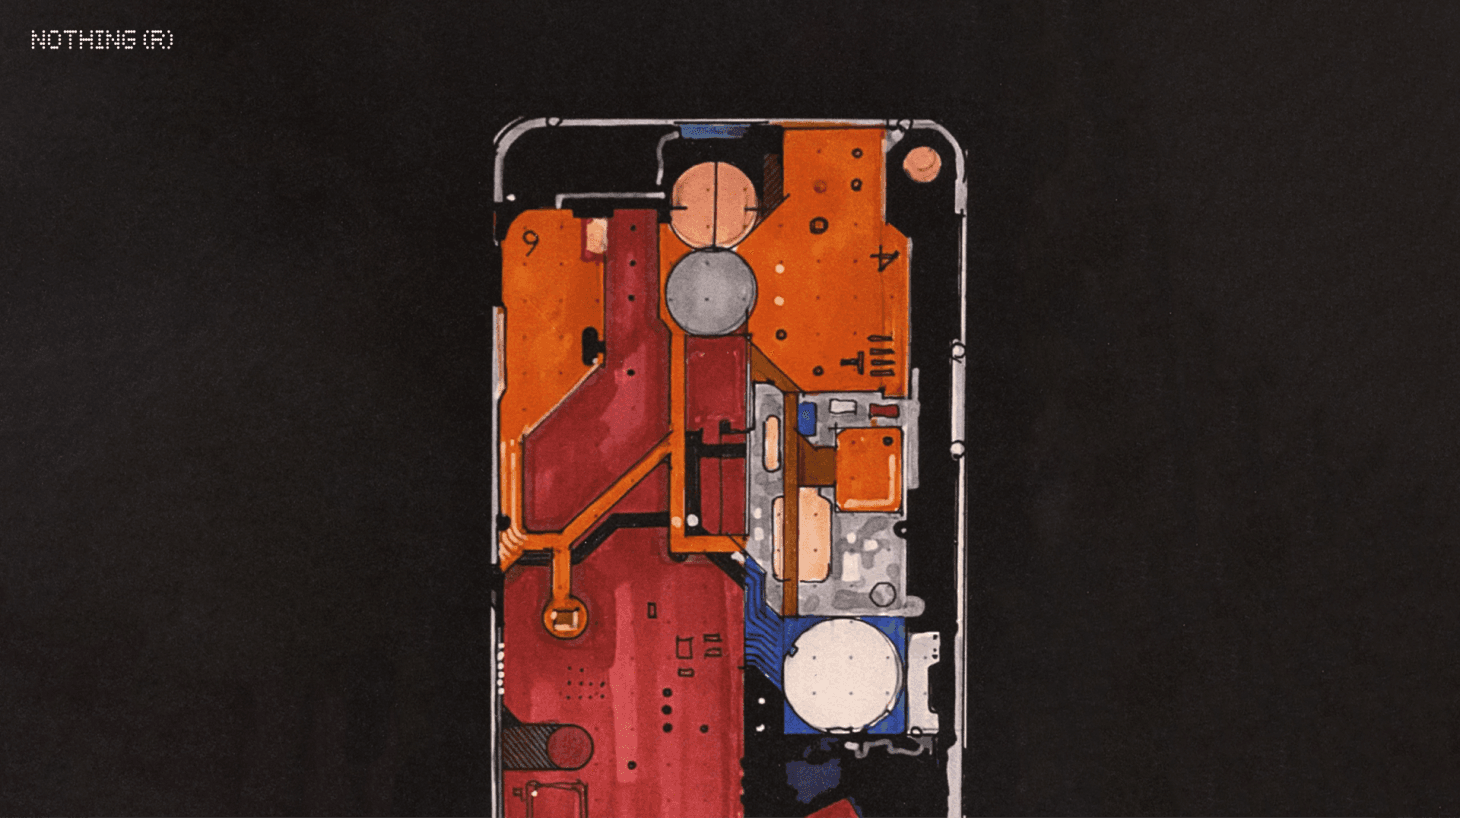 احد تصاميم هاتف Nothing Phone 1 المحتملة التي قدمتها شركة نوثينج 